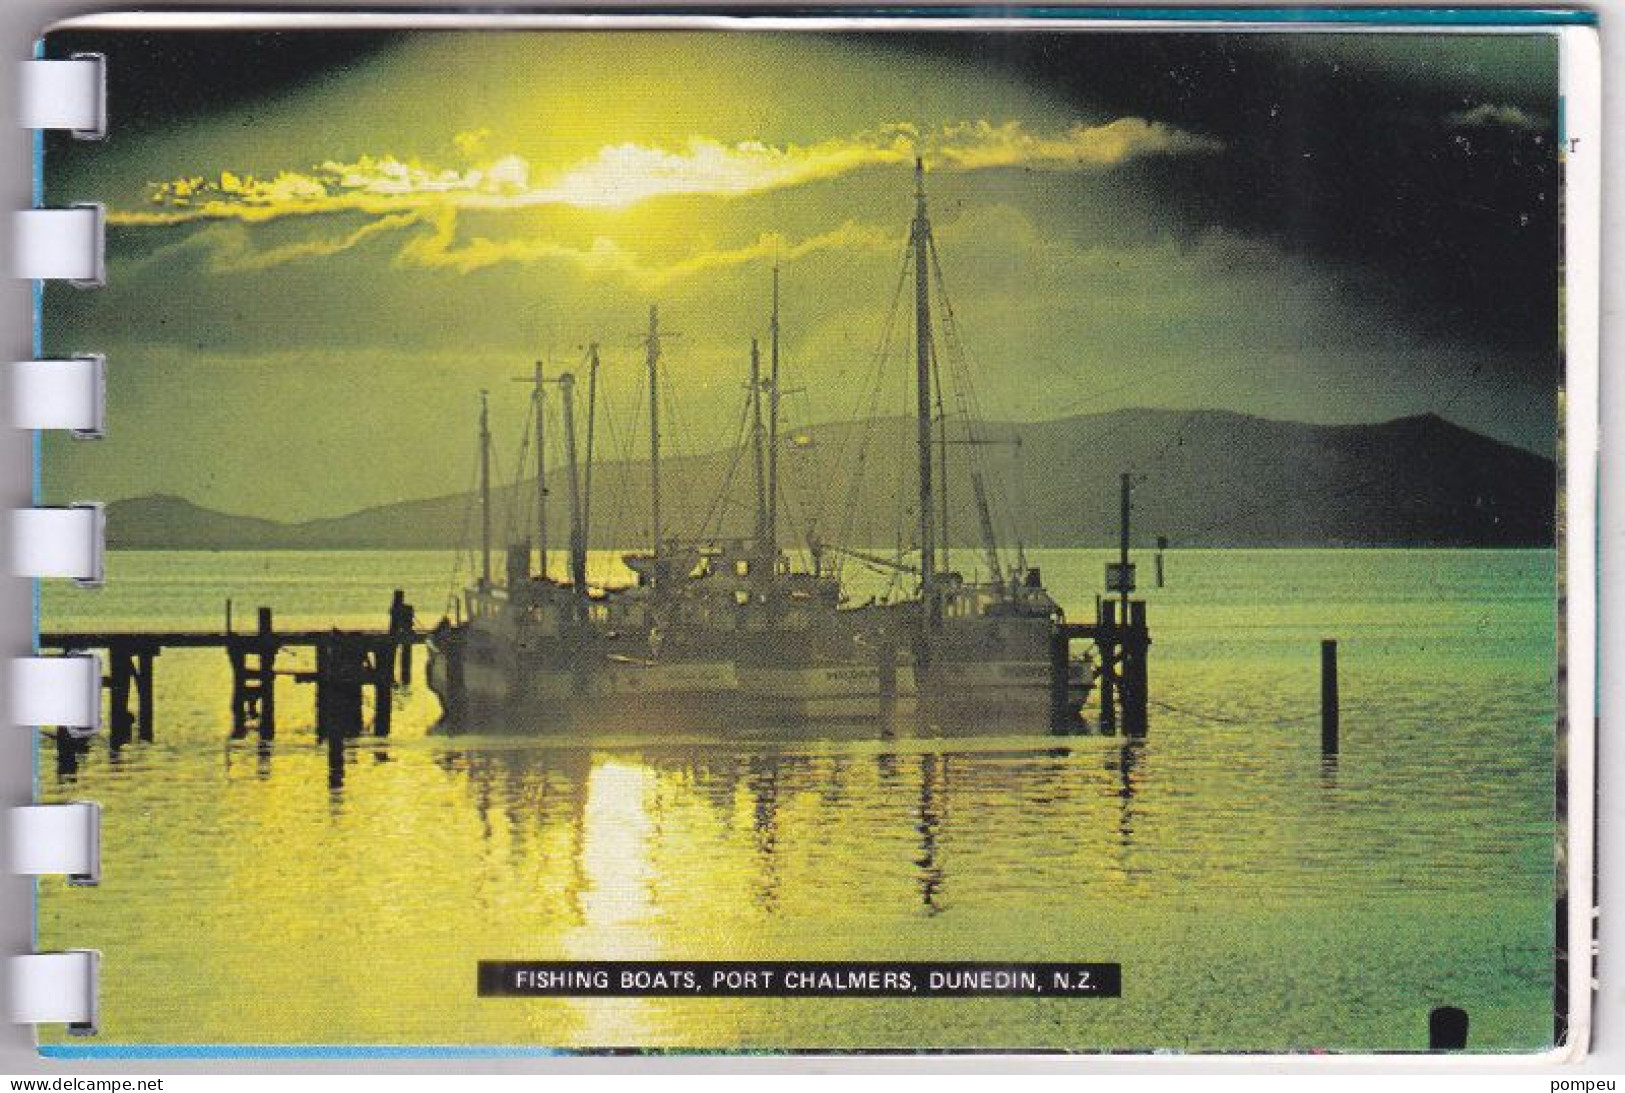 QT - Pictures of NEW ZELAND (souvenir)